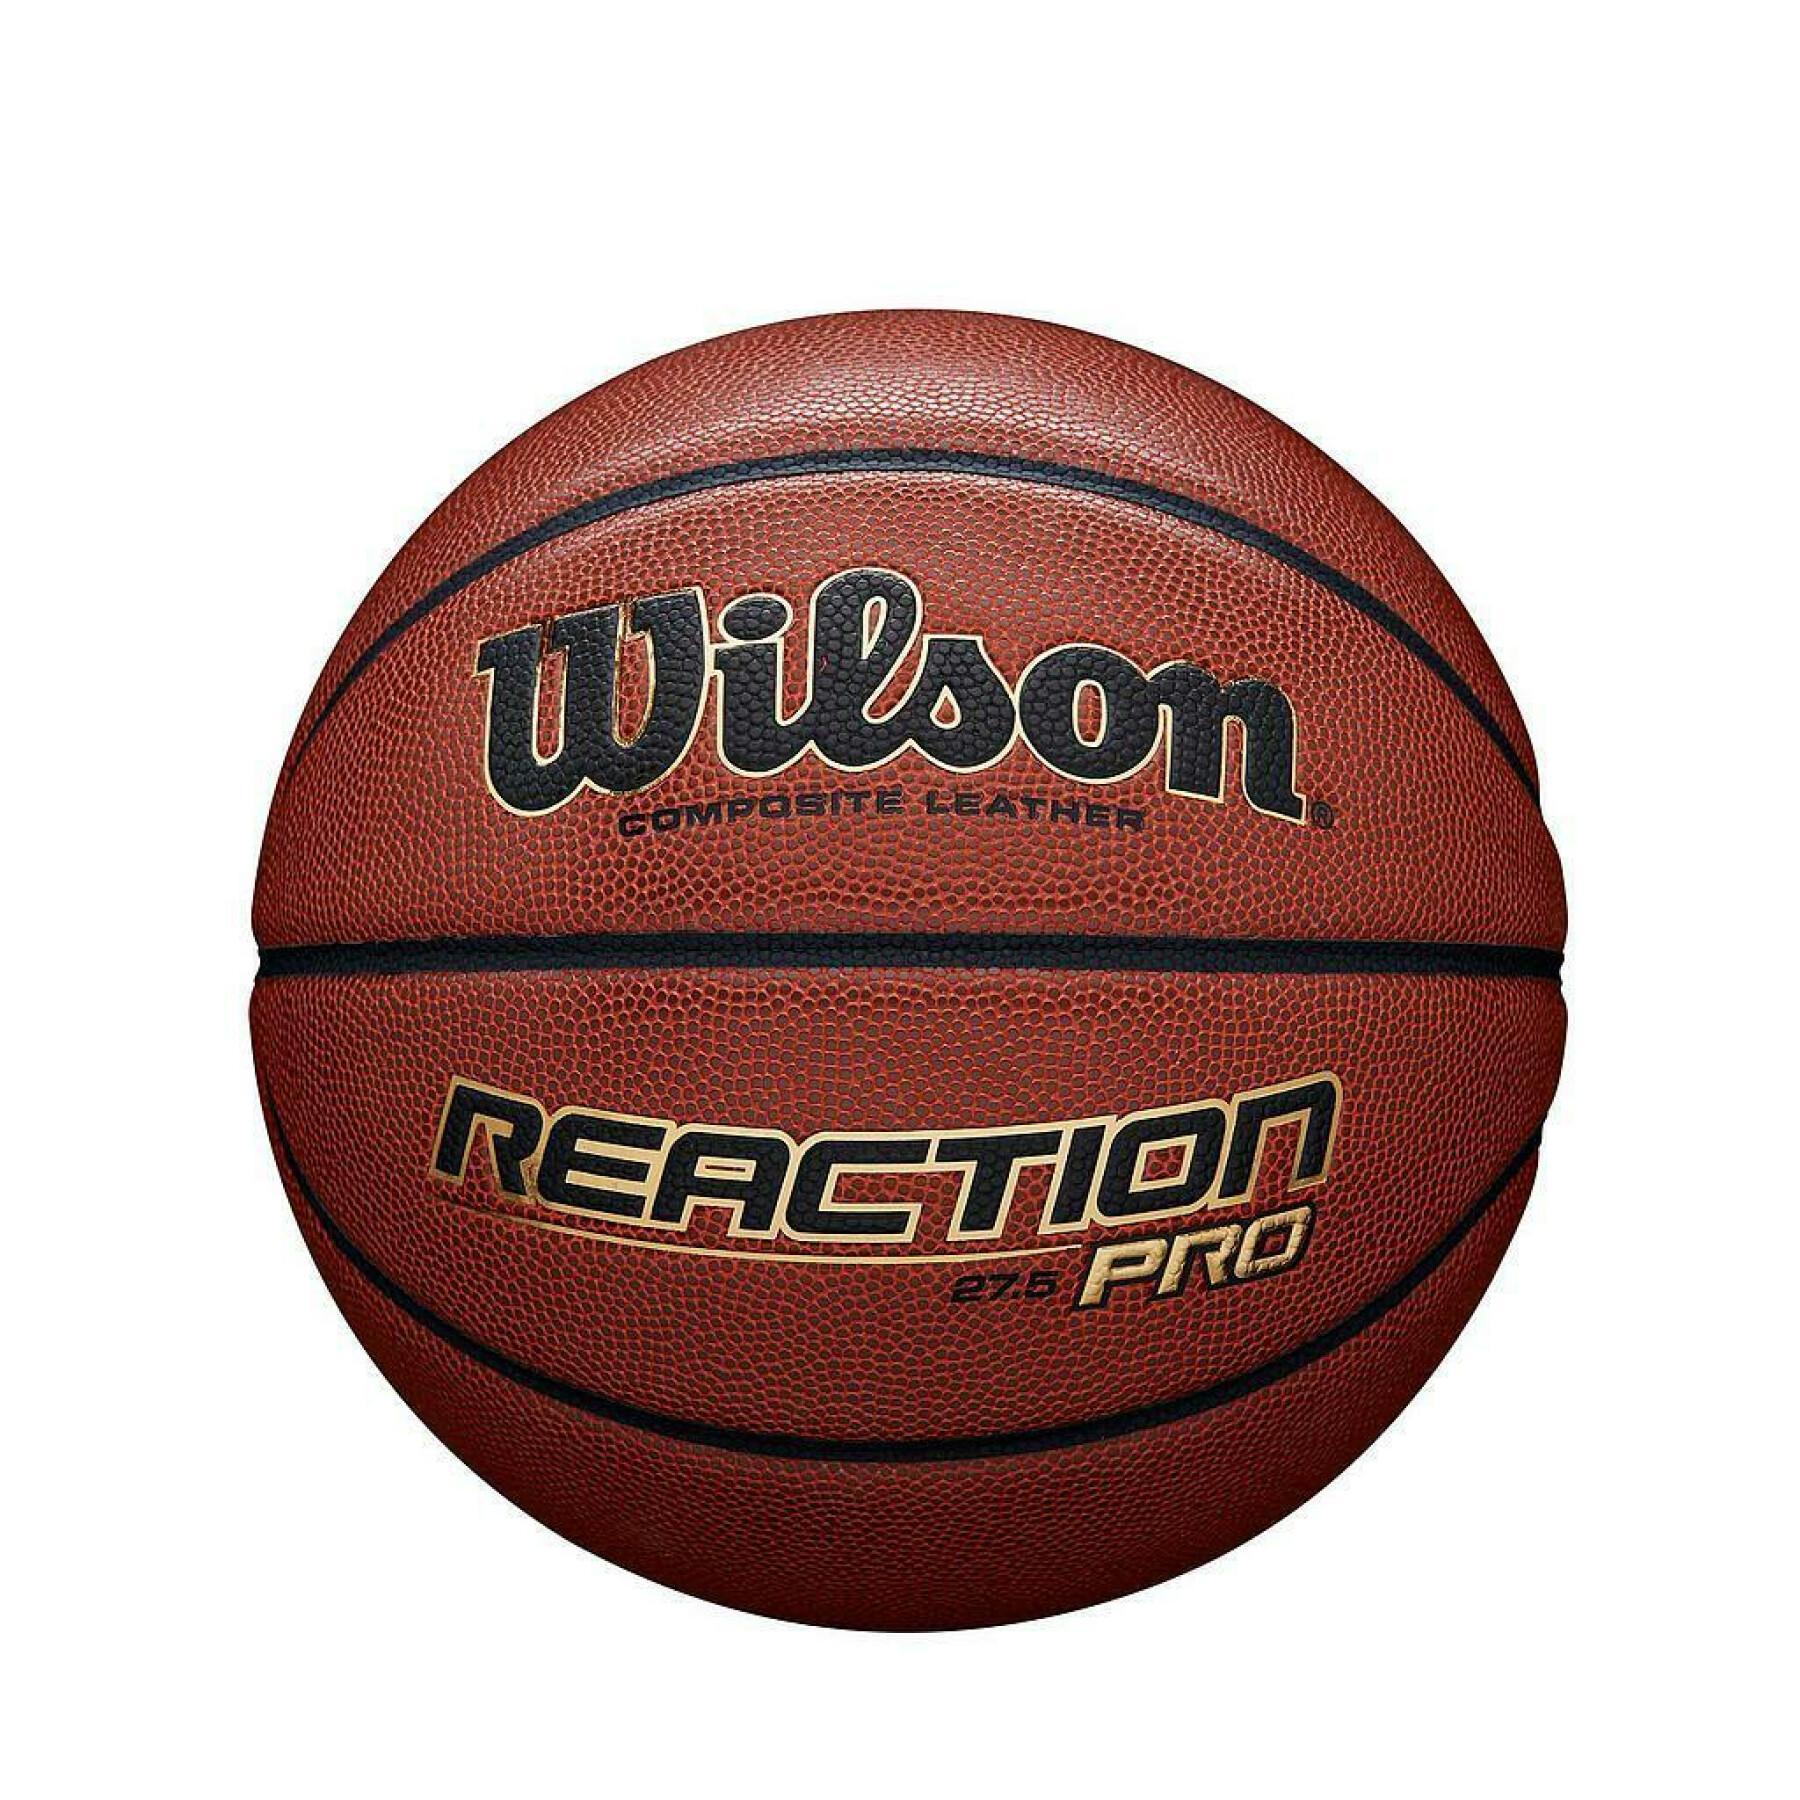 Balloon Wilson Reaction Pro 275